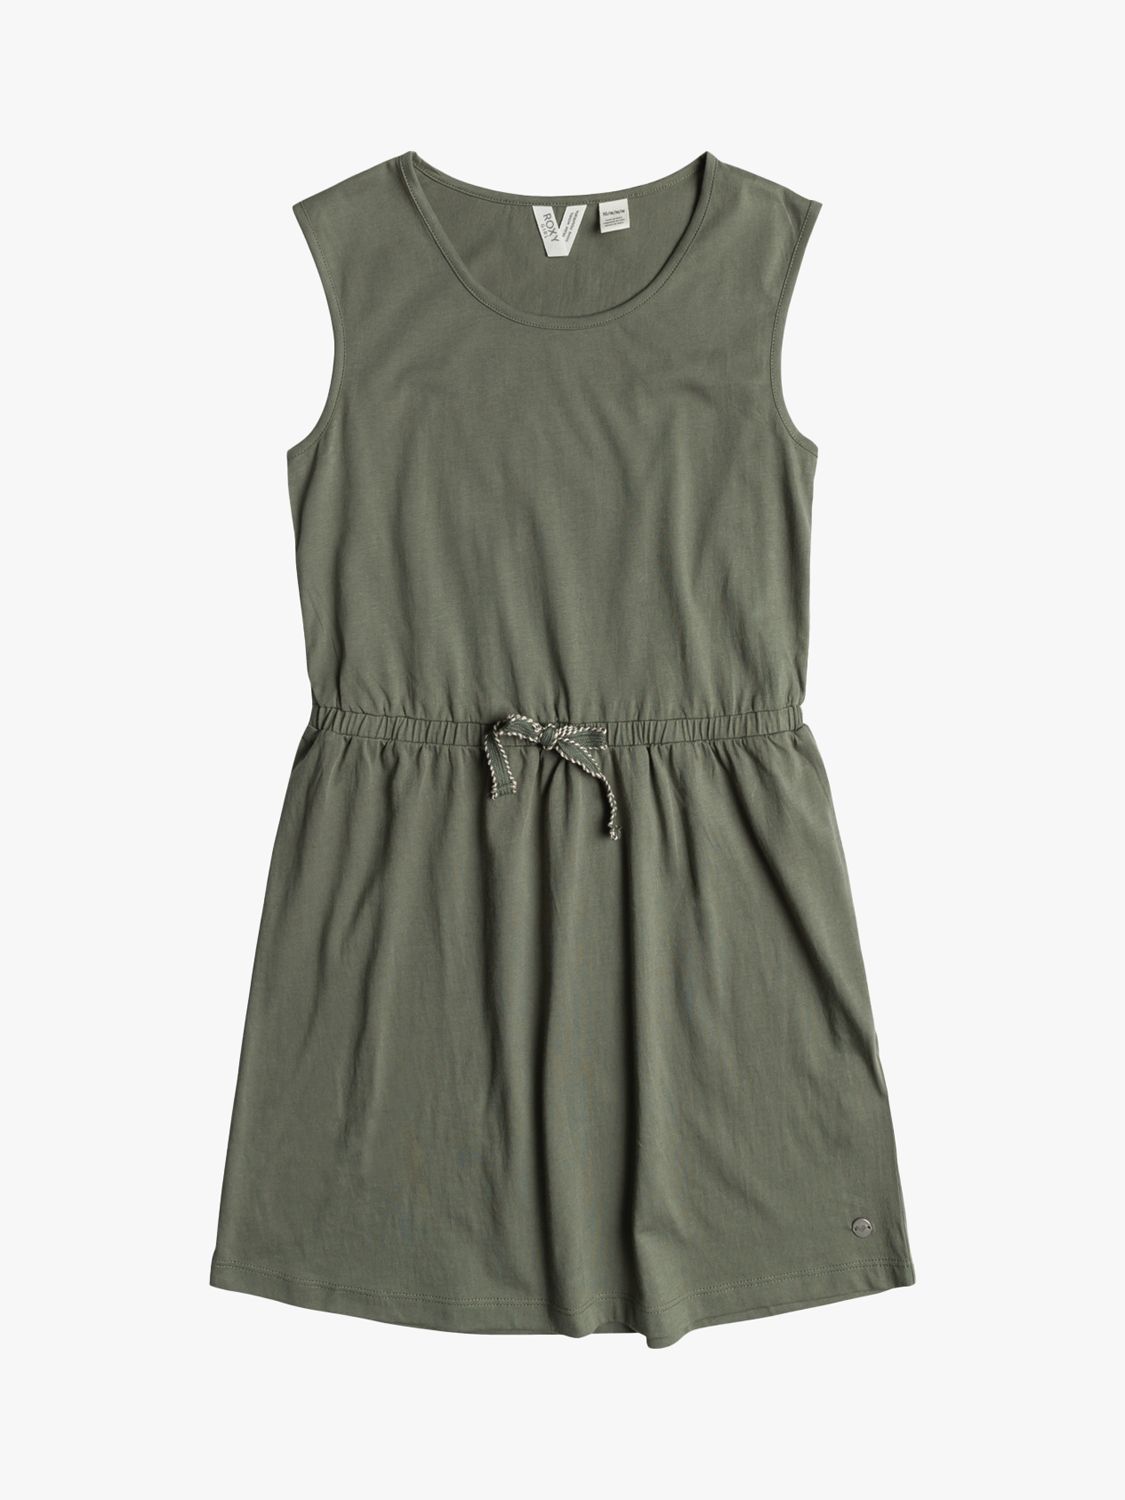 Buy Roxy Kids' Surfs Up Solid Vest Top Dress, Agave Green Online at johnlewis.com